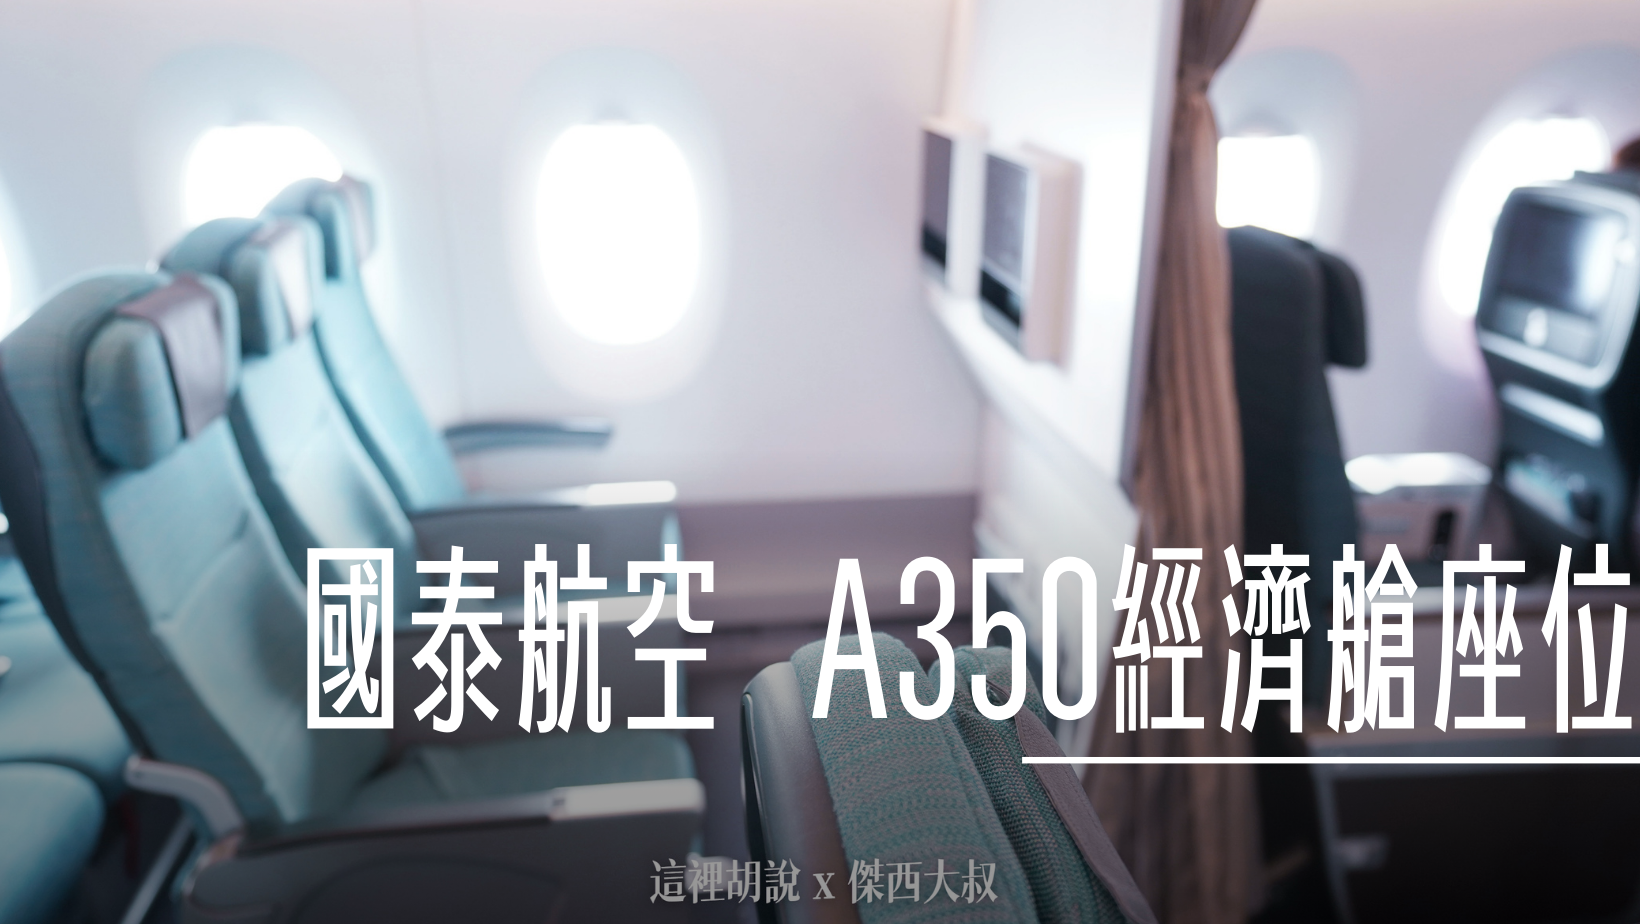 國泰航空 A330-300 HKG-TPE 魚骨商務艙 香港機場自動化登機